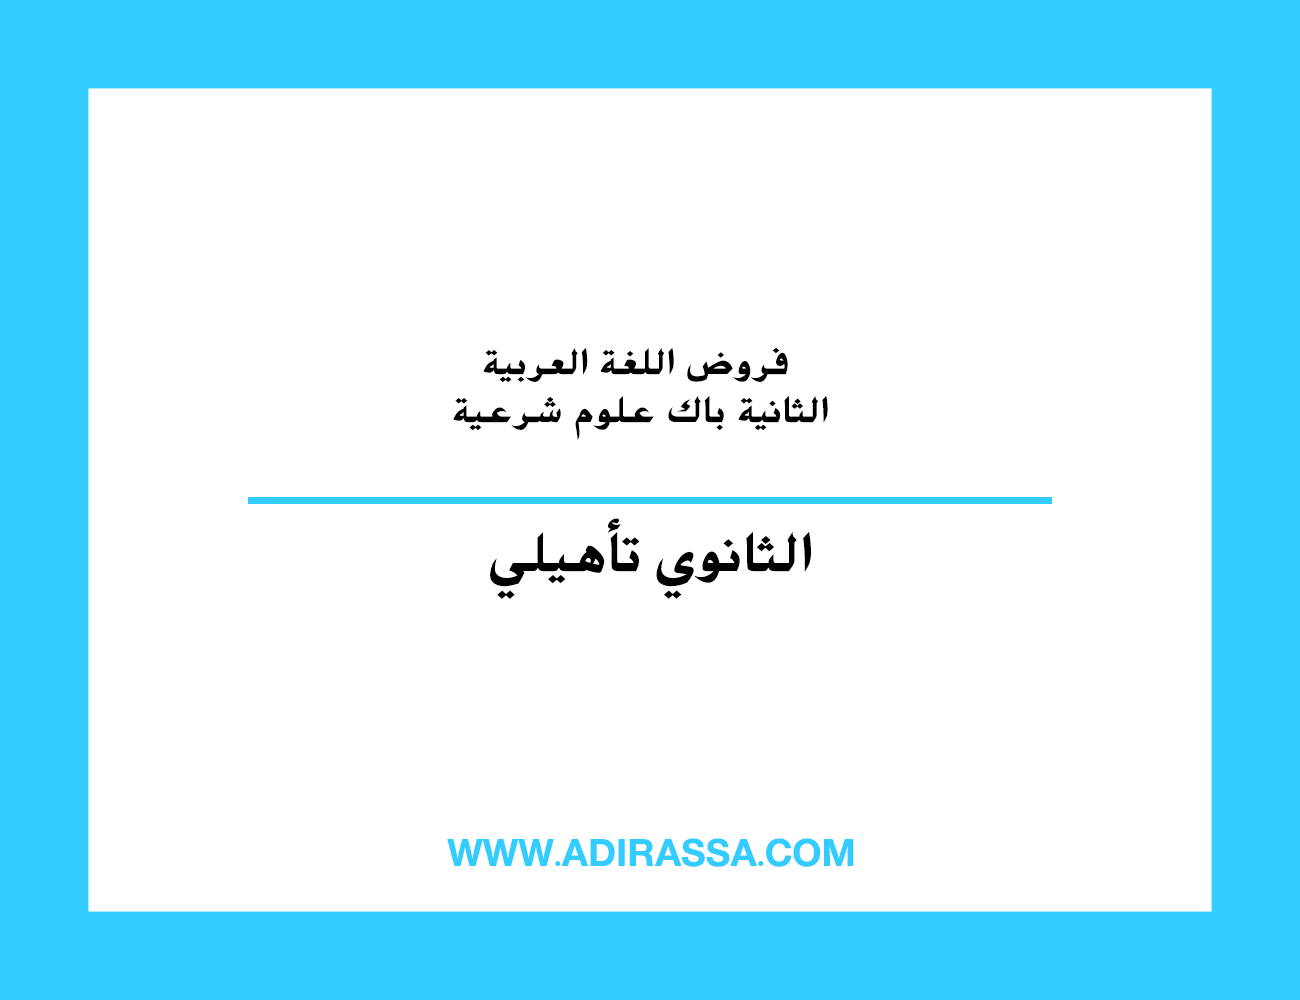 فروض اللغة العربية الثانية باك علوم شرعية بمستوى الثانوي التأهيلي